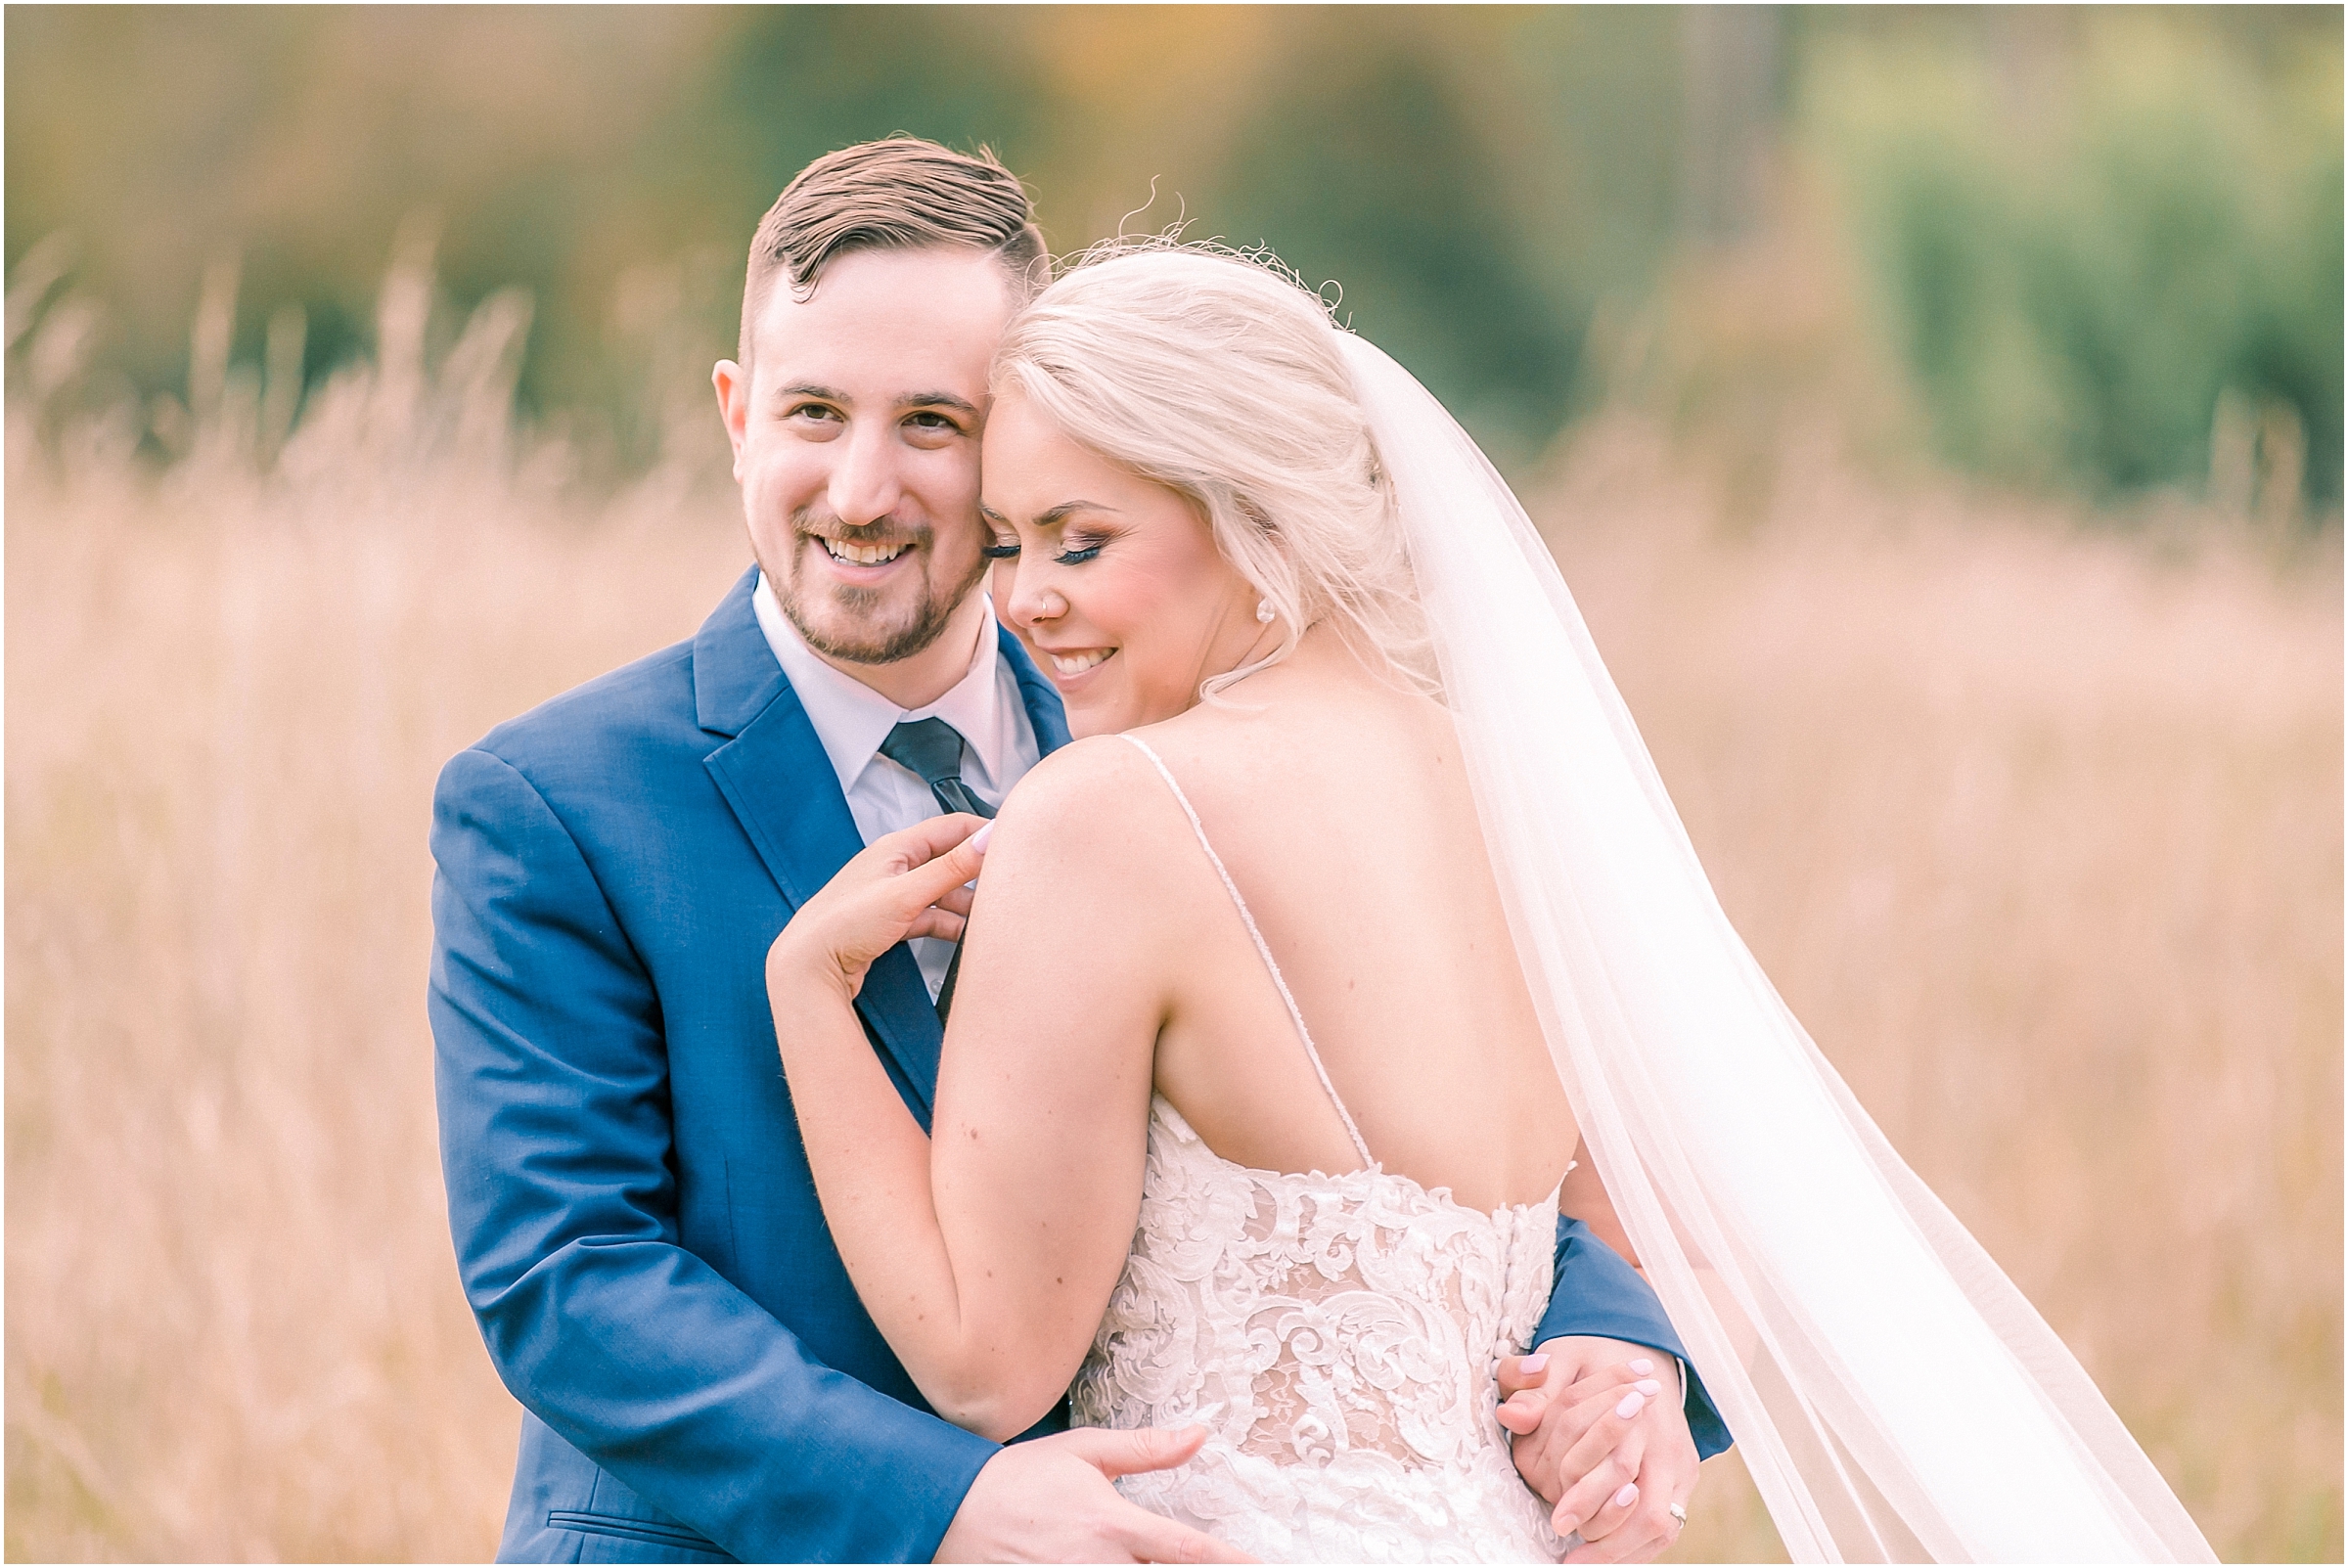 Autumn Marionfield Farm Wedding | Ben & Katelyn